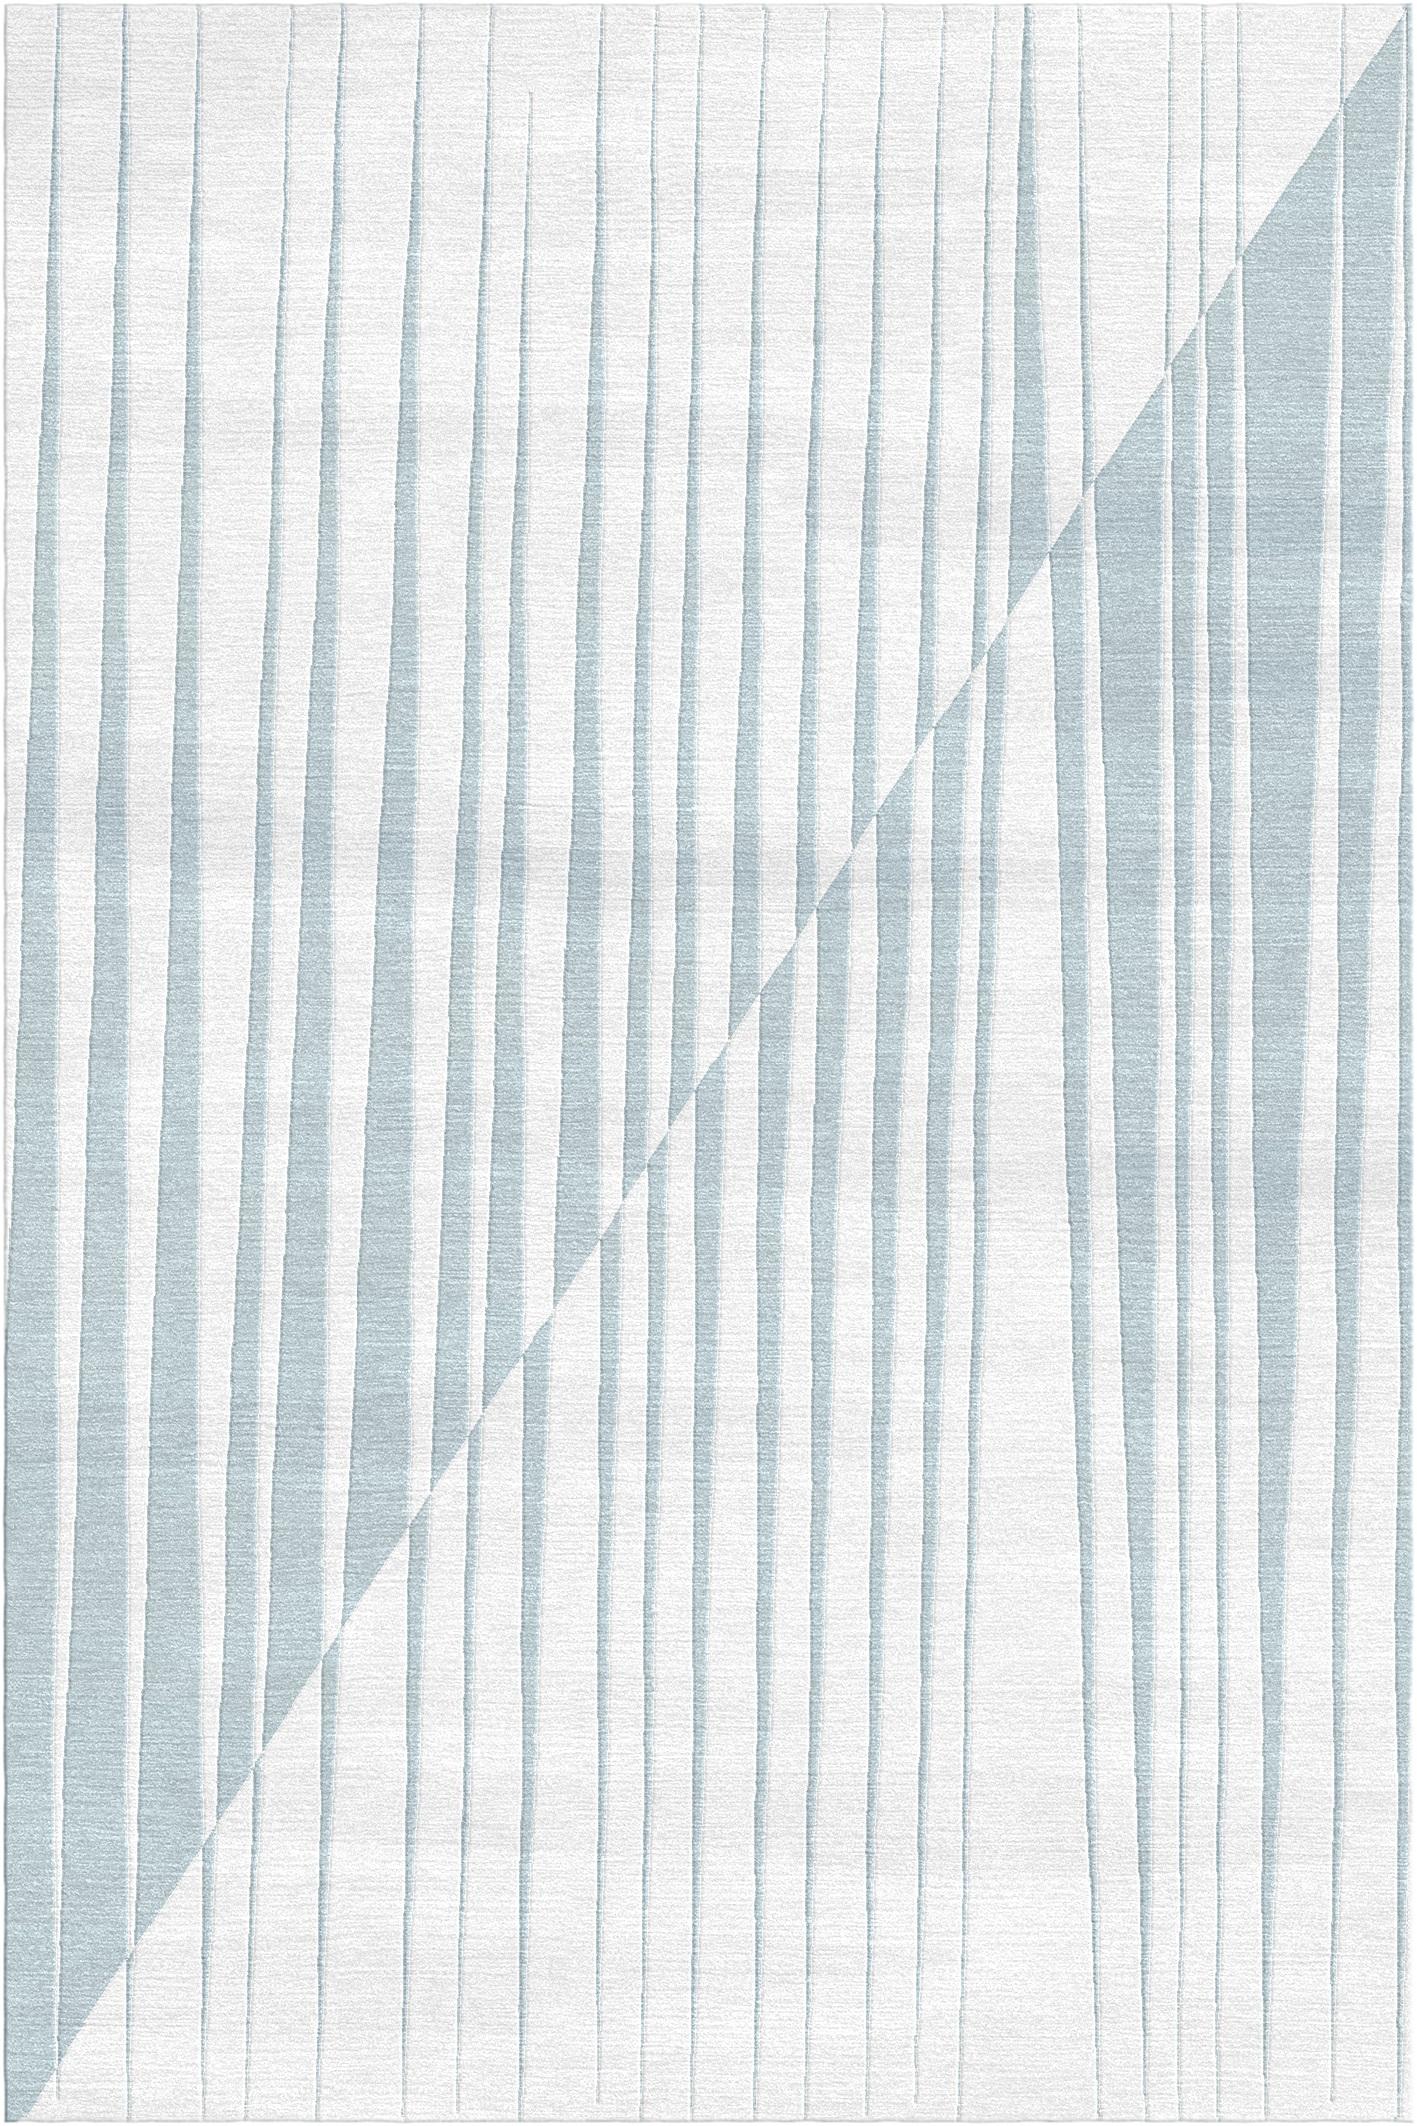 Spieghe teppich I von Giulio Brambilla
Abmessungen: D 300 x B 200 x H 1,5 cm
MATERIALIEN: NZ-Wolle, Bambusseide
Erhältlich in anderen Farben.

Eine faszinierende Kombination aus Tradition und Innovation macht diesen Teppich zu einem Blickfang in